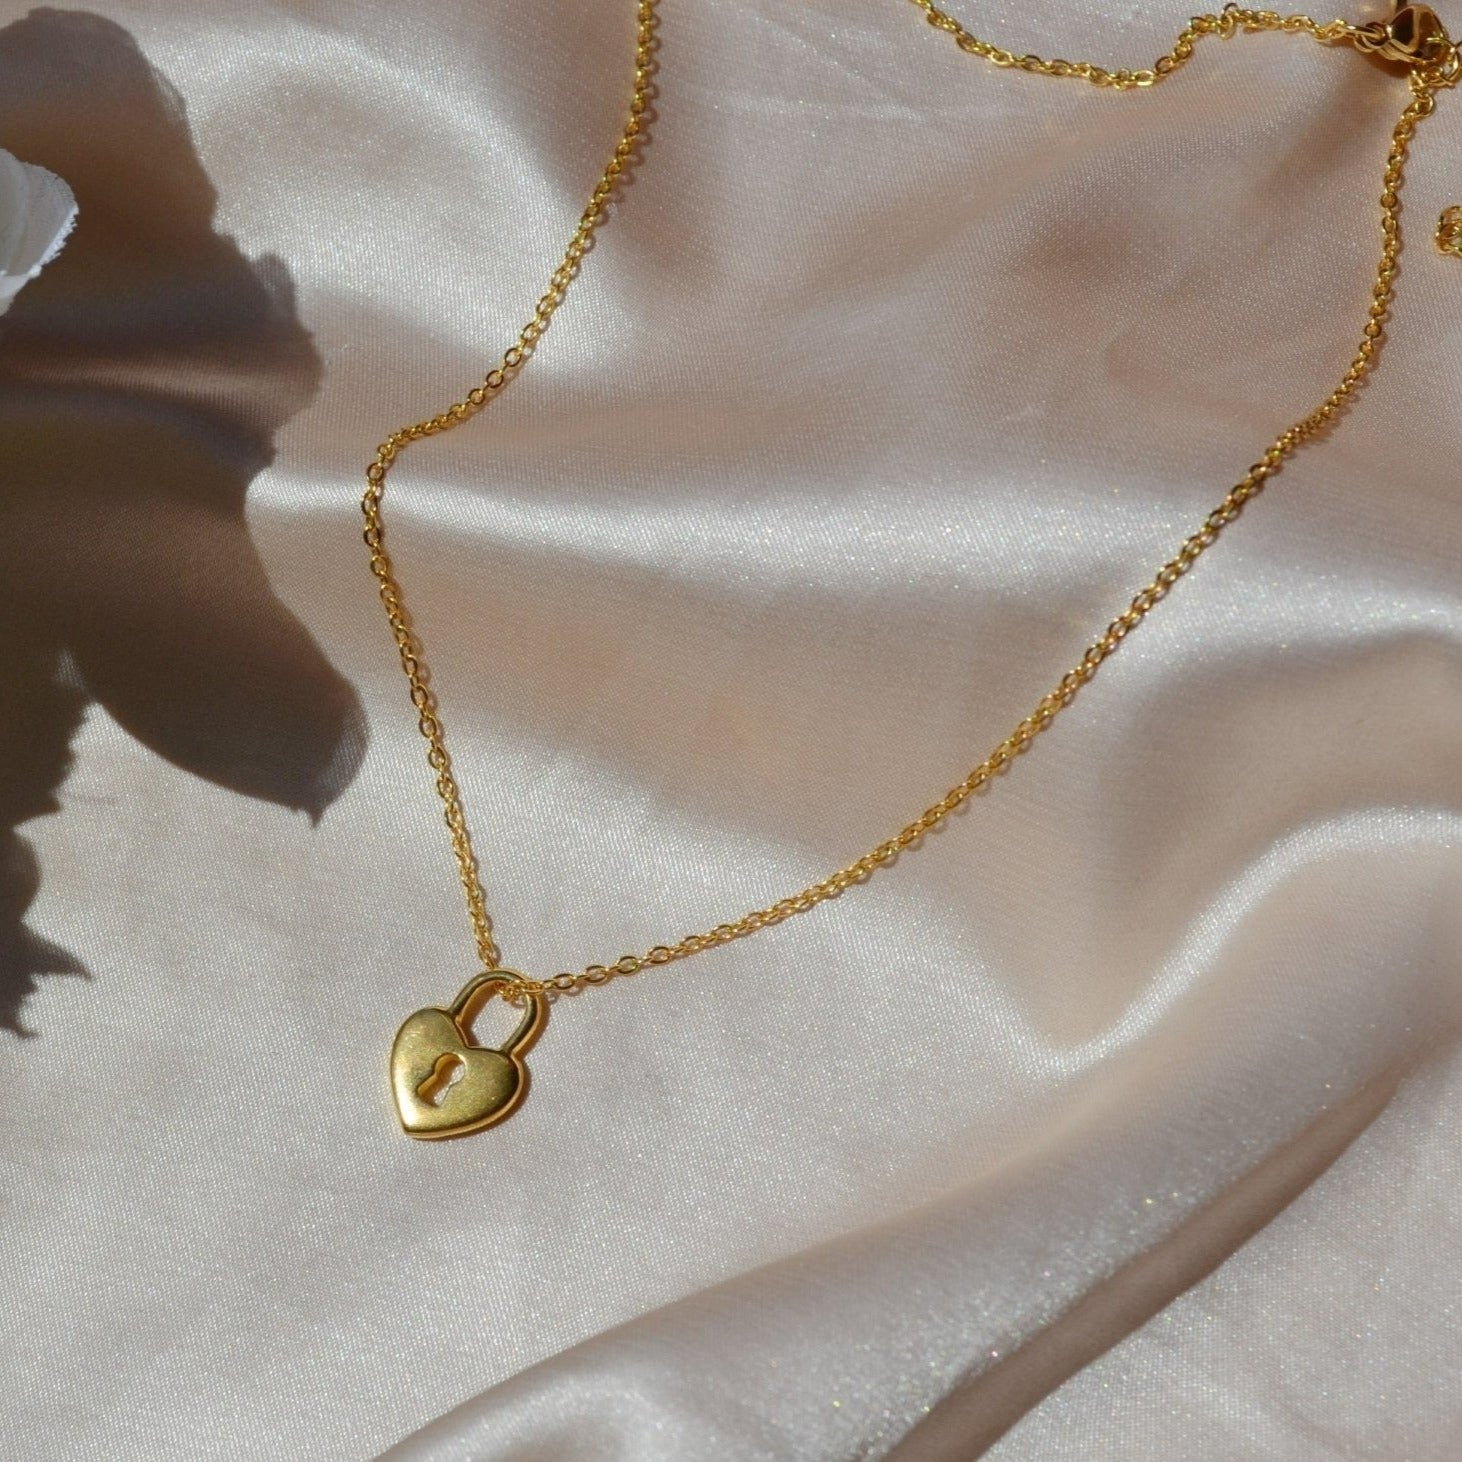 Tiffany Heart Lock Necklace